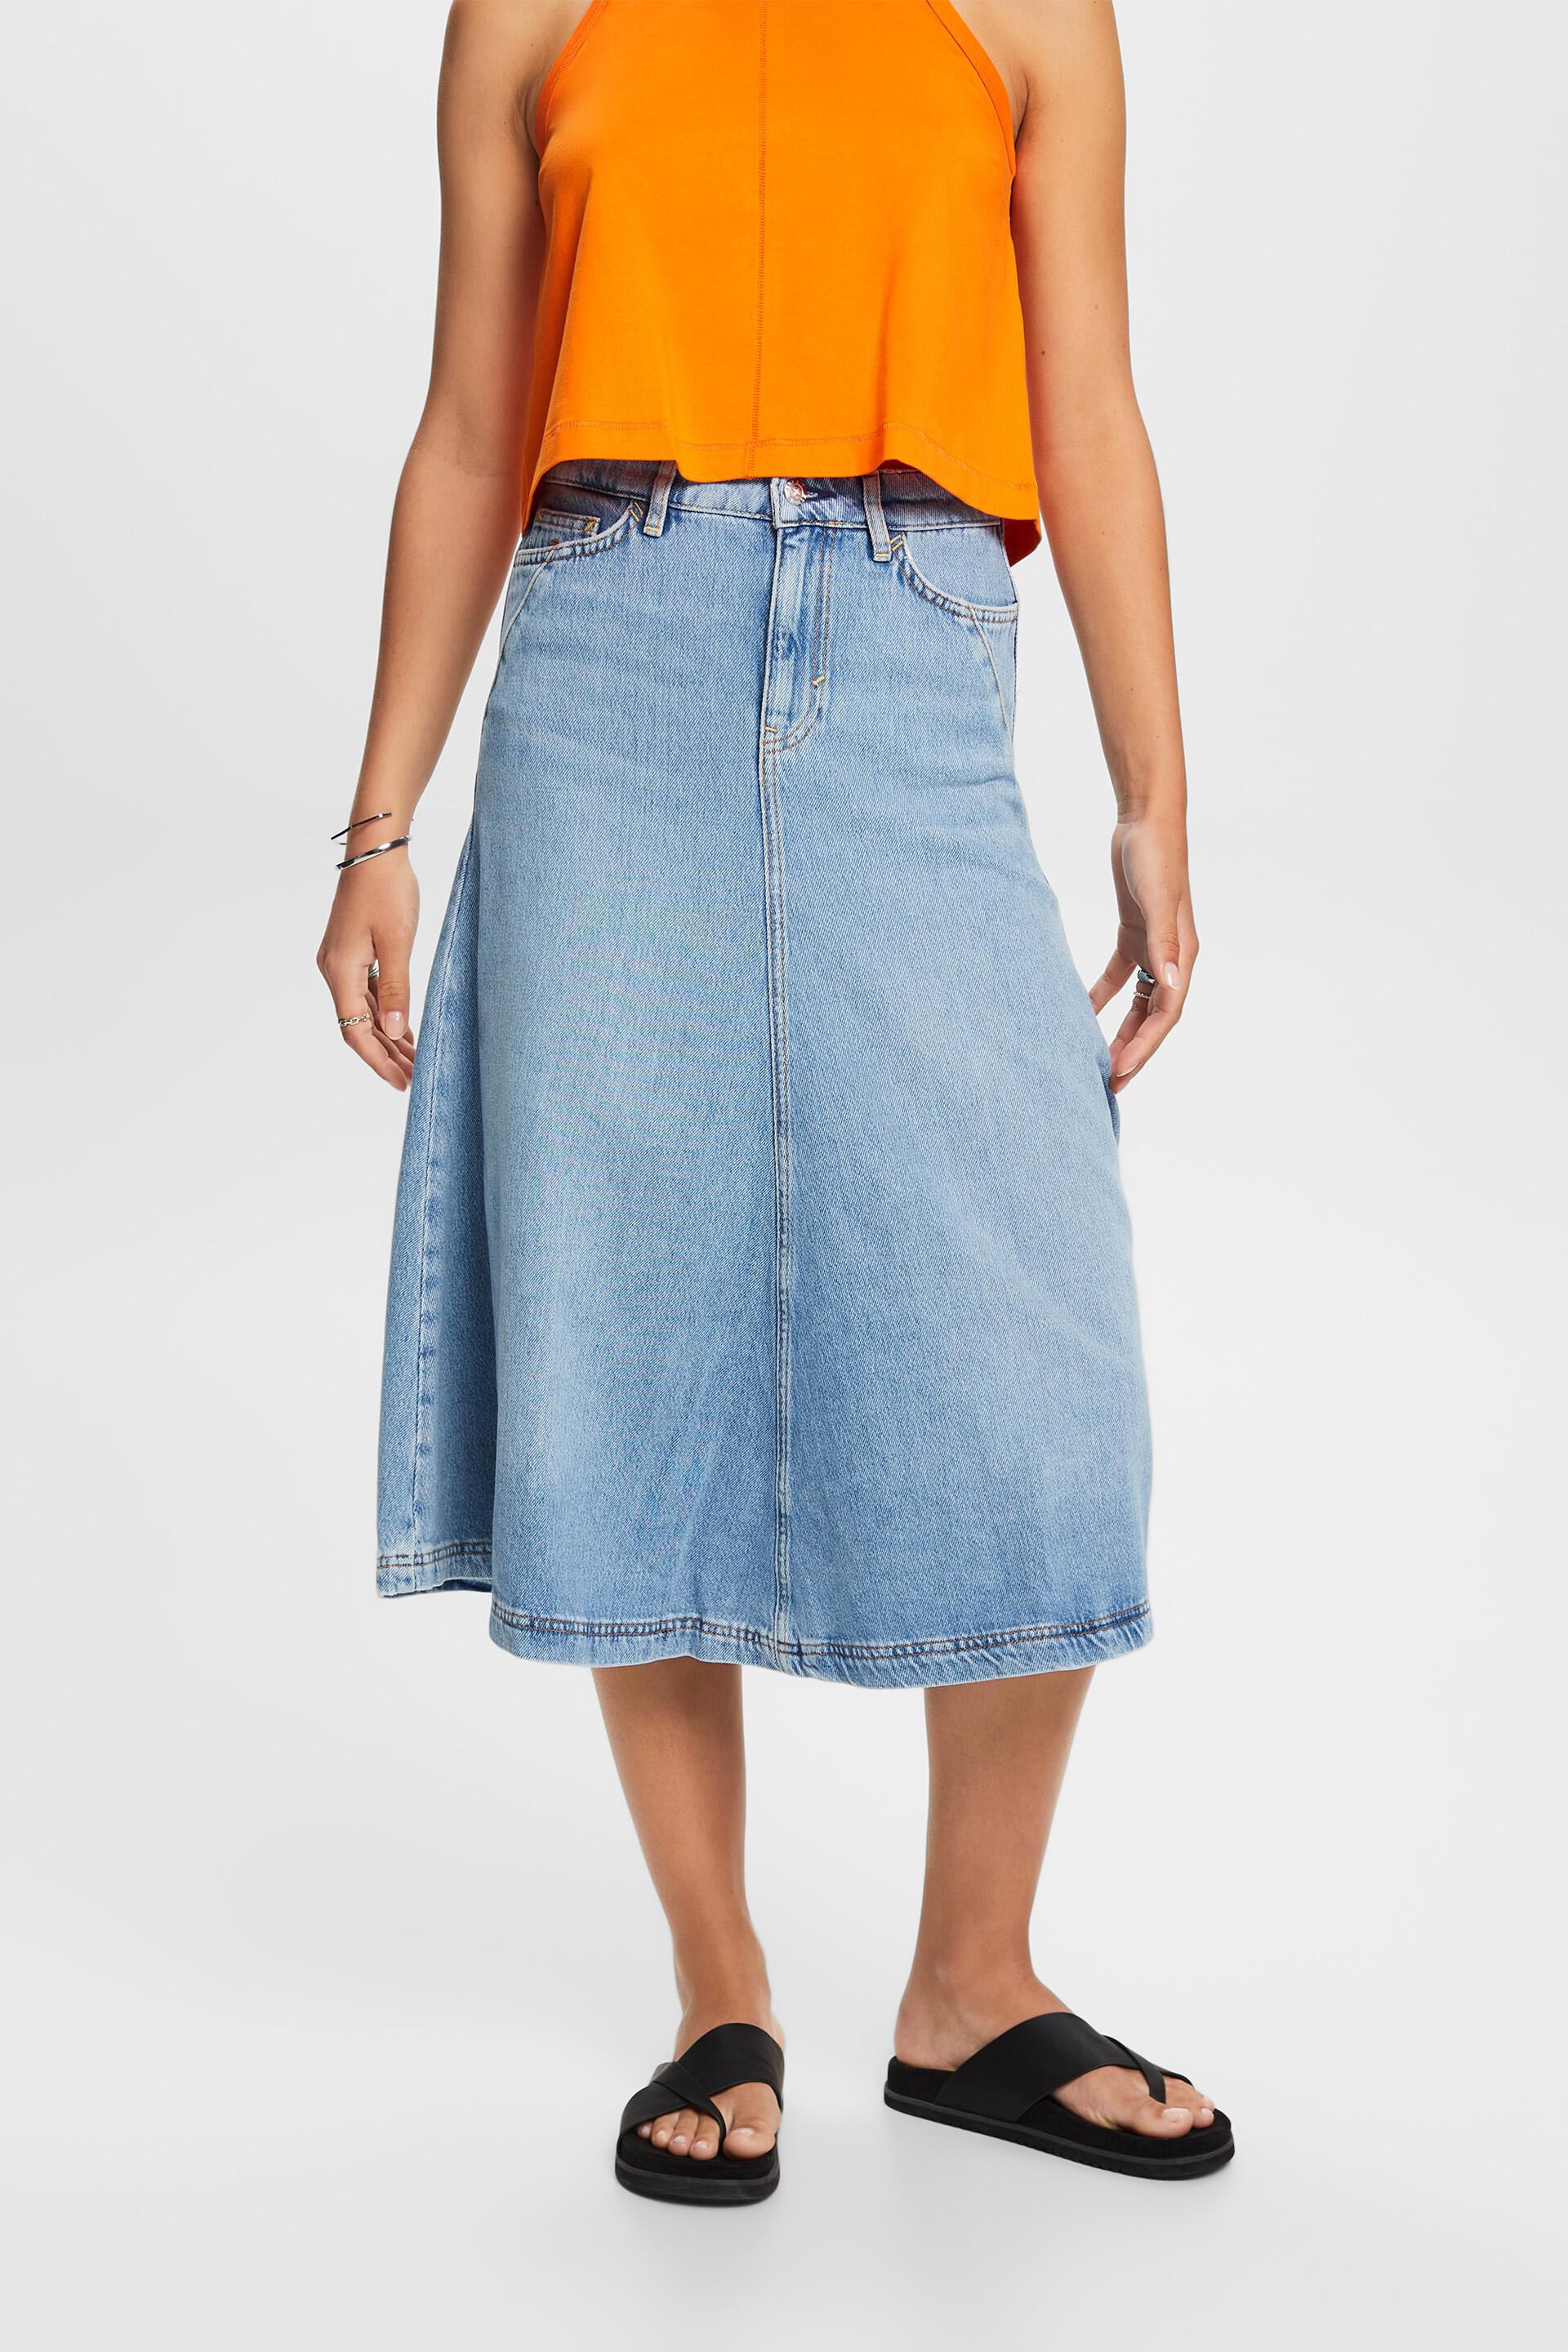 Esprit skirt, cotton Jeans blend midi